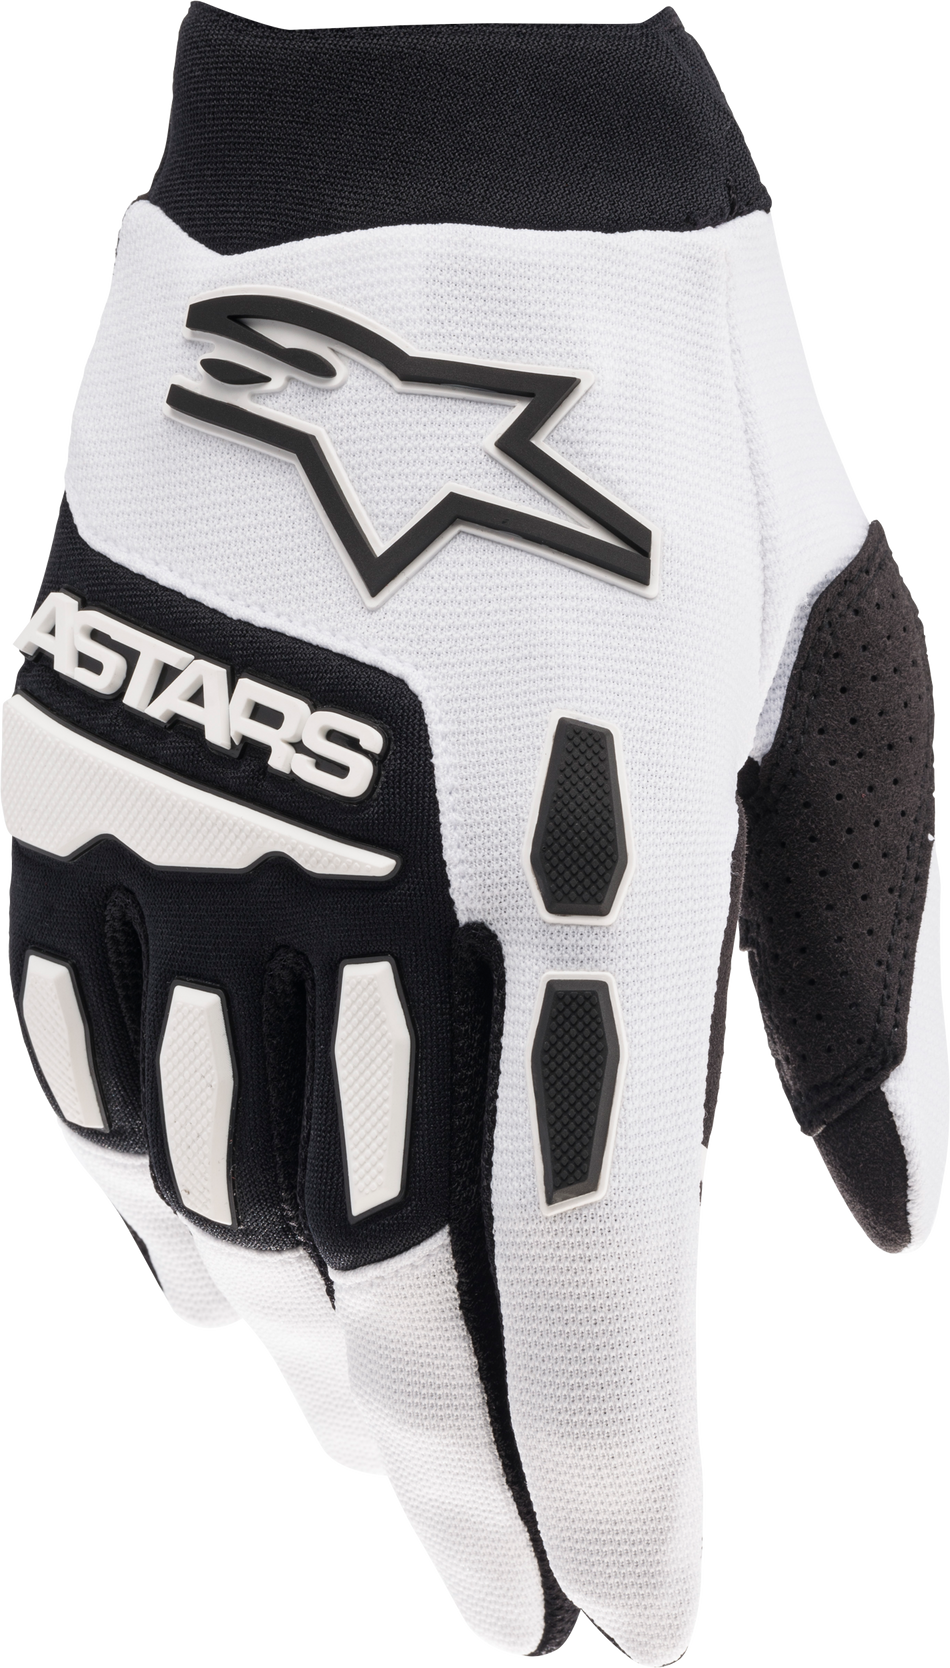 ALPINESTARS Youth Full Bore Gloves White/Black Sm 3543622-21-S